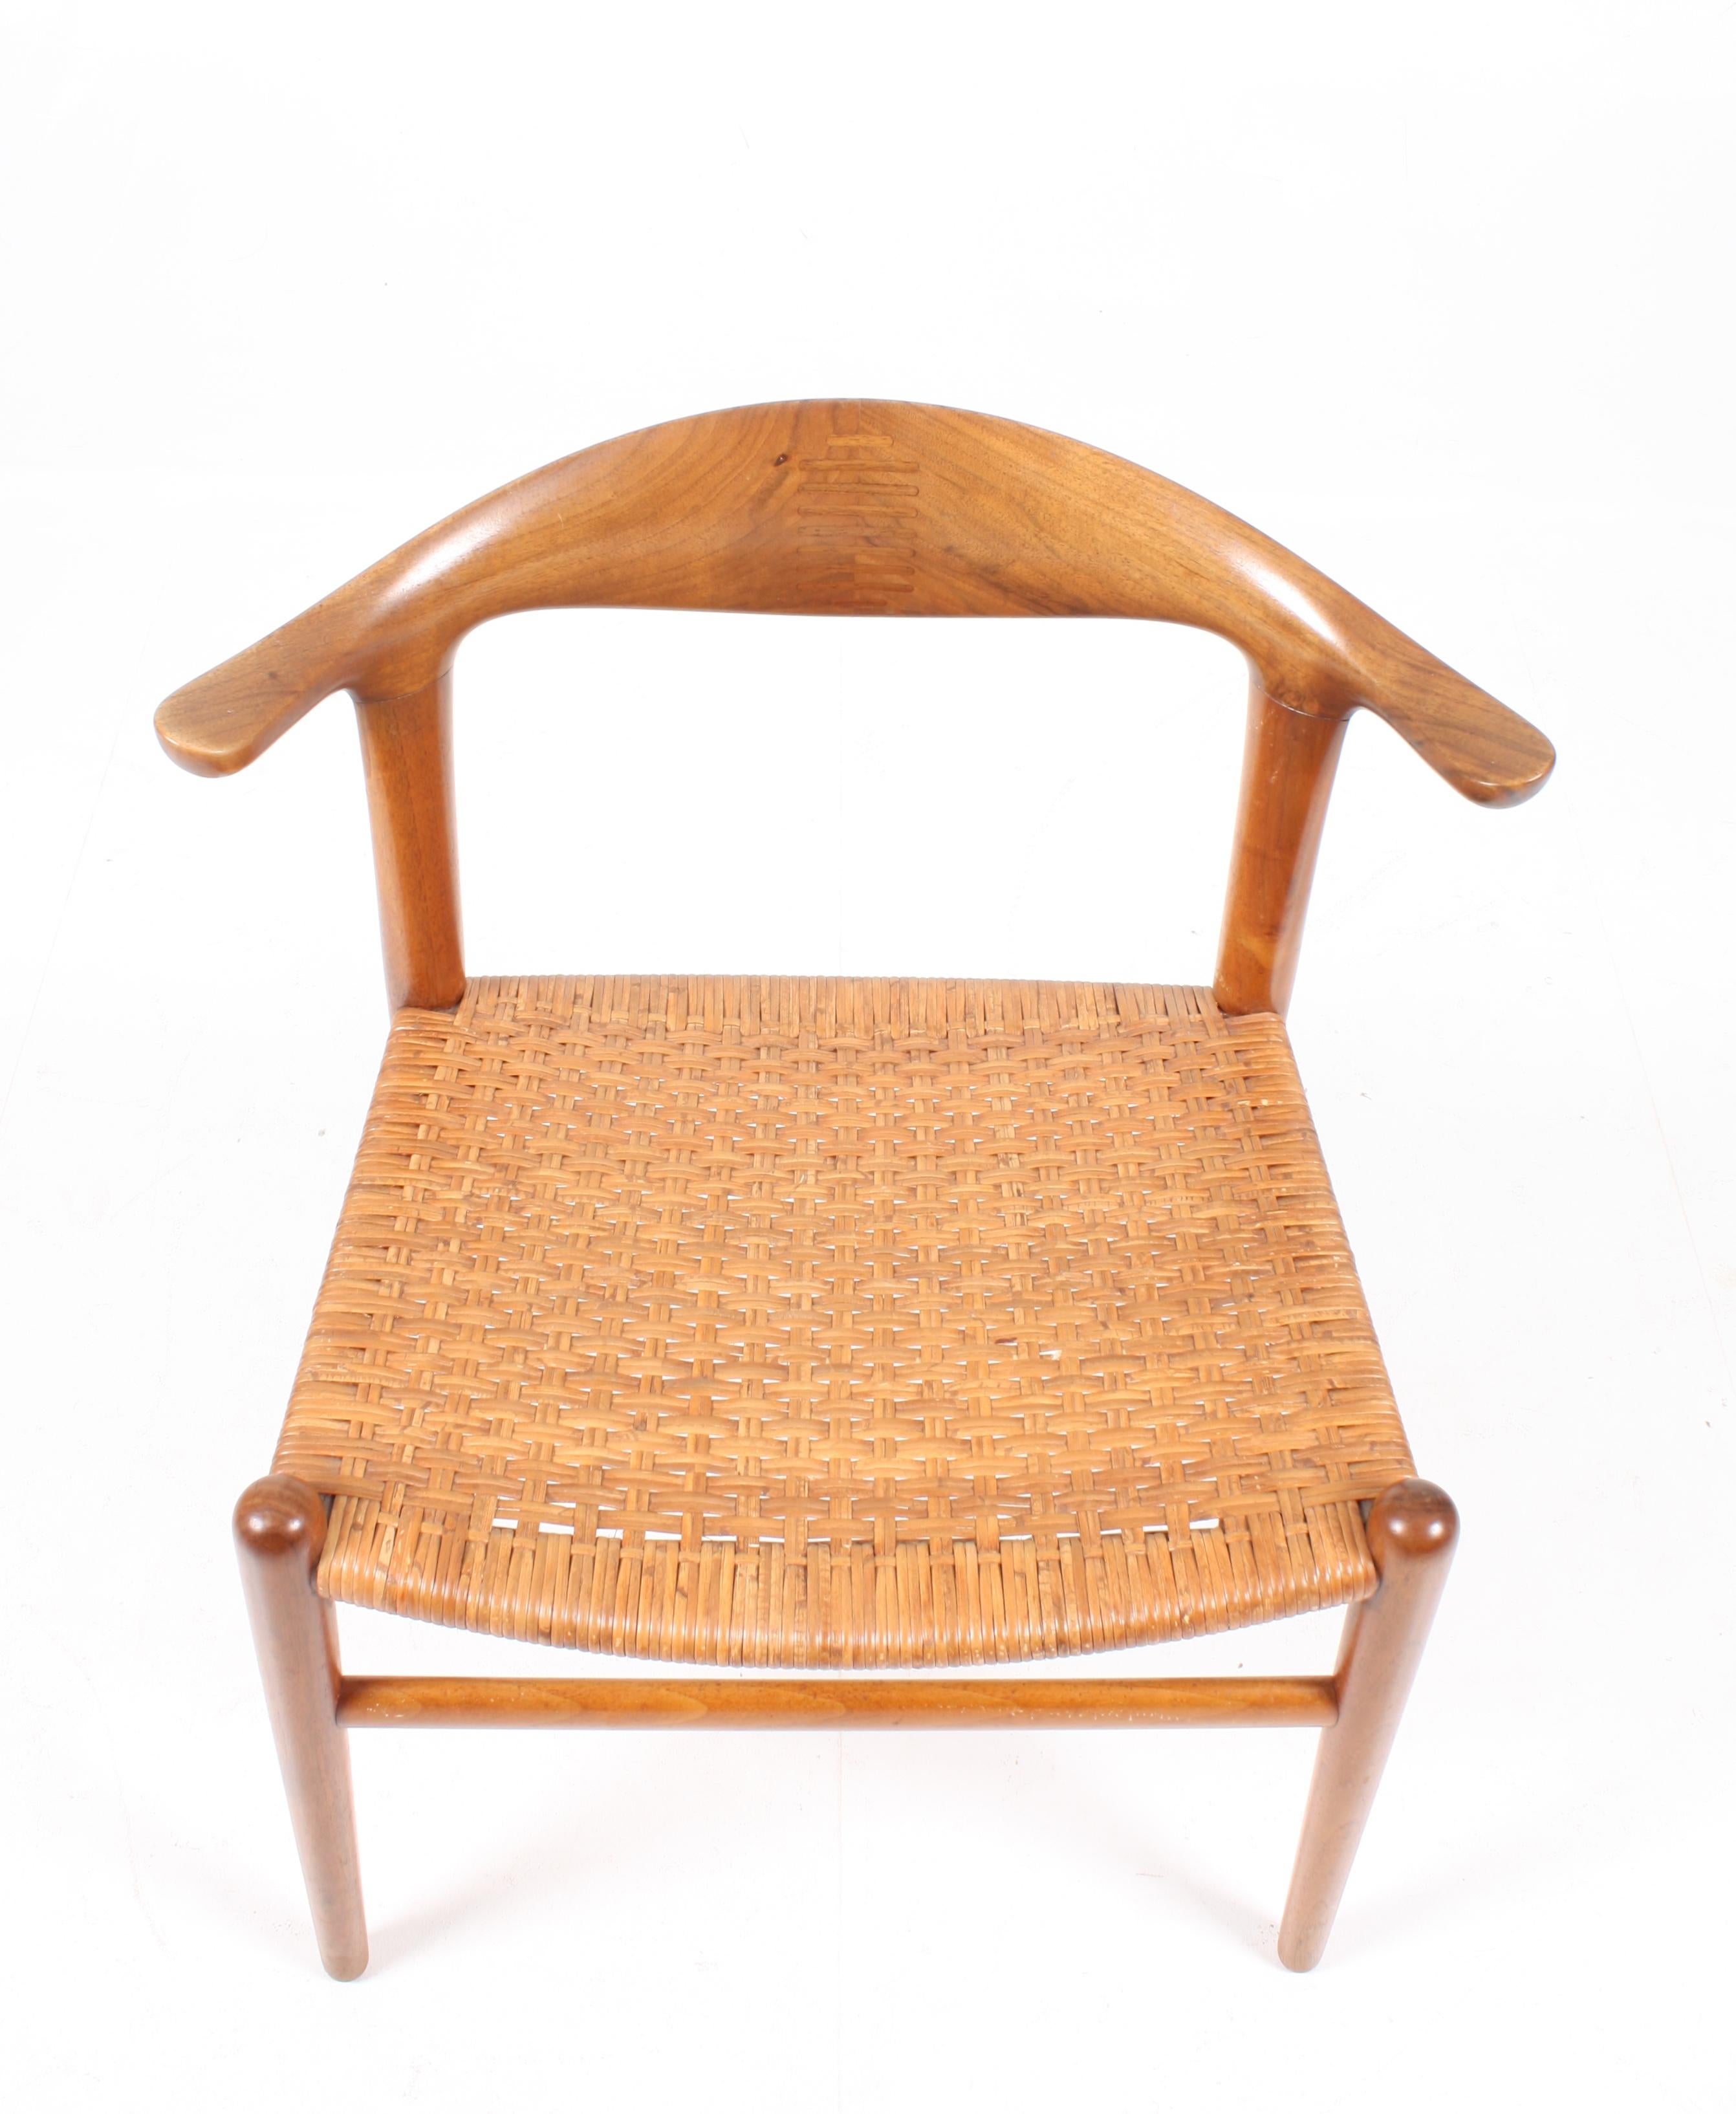 Cowhorn-Stuhl von Wegner (Skandinavische Moderne)